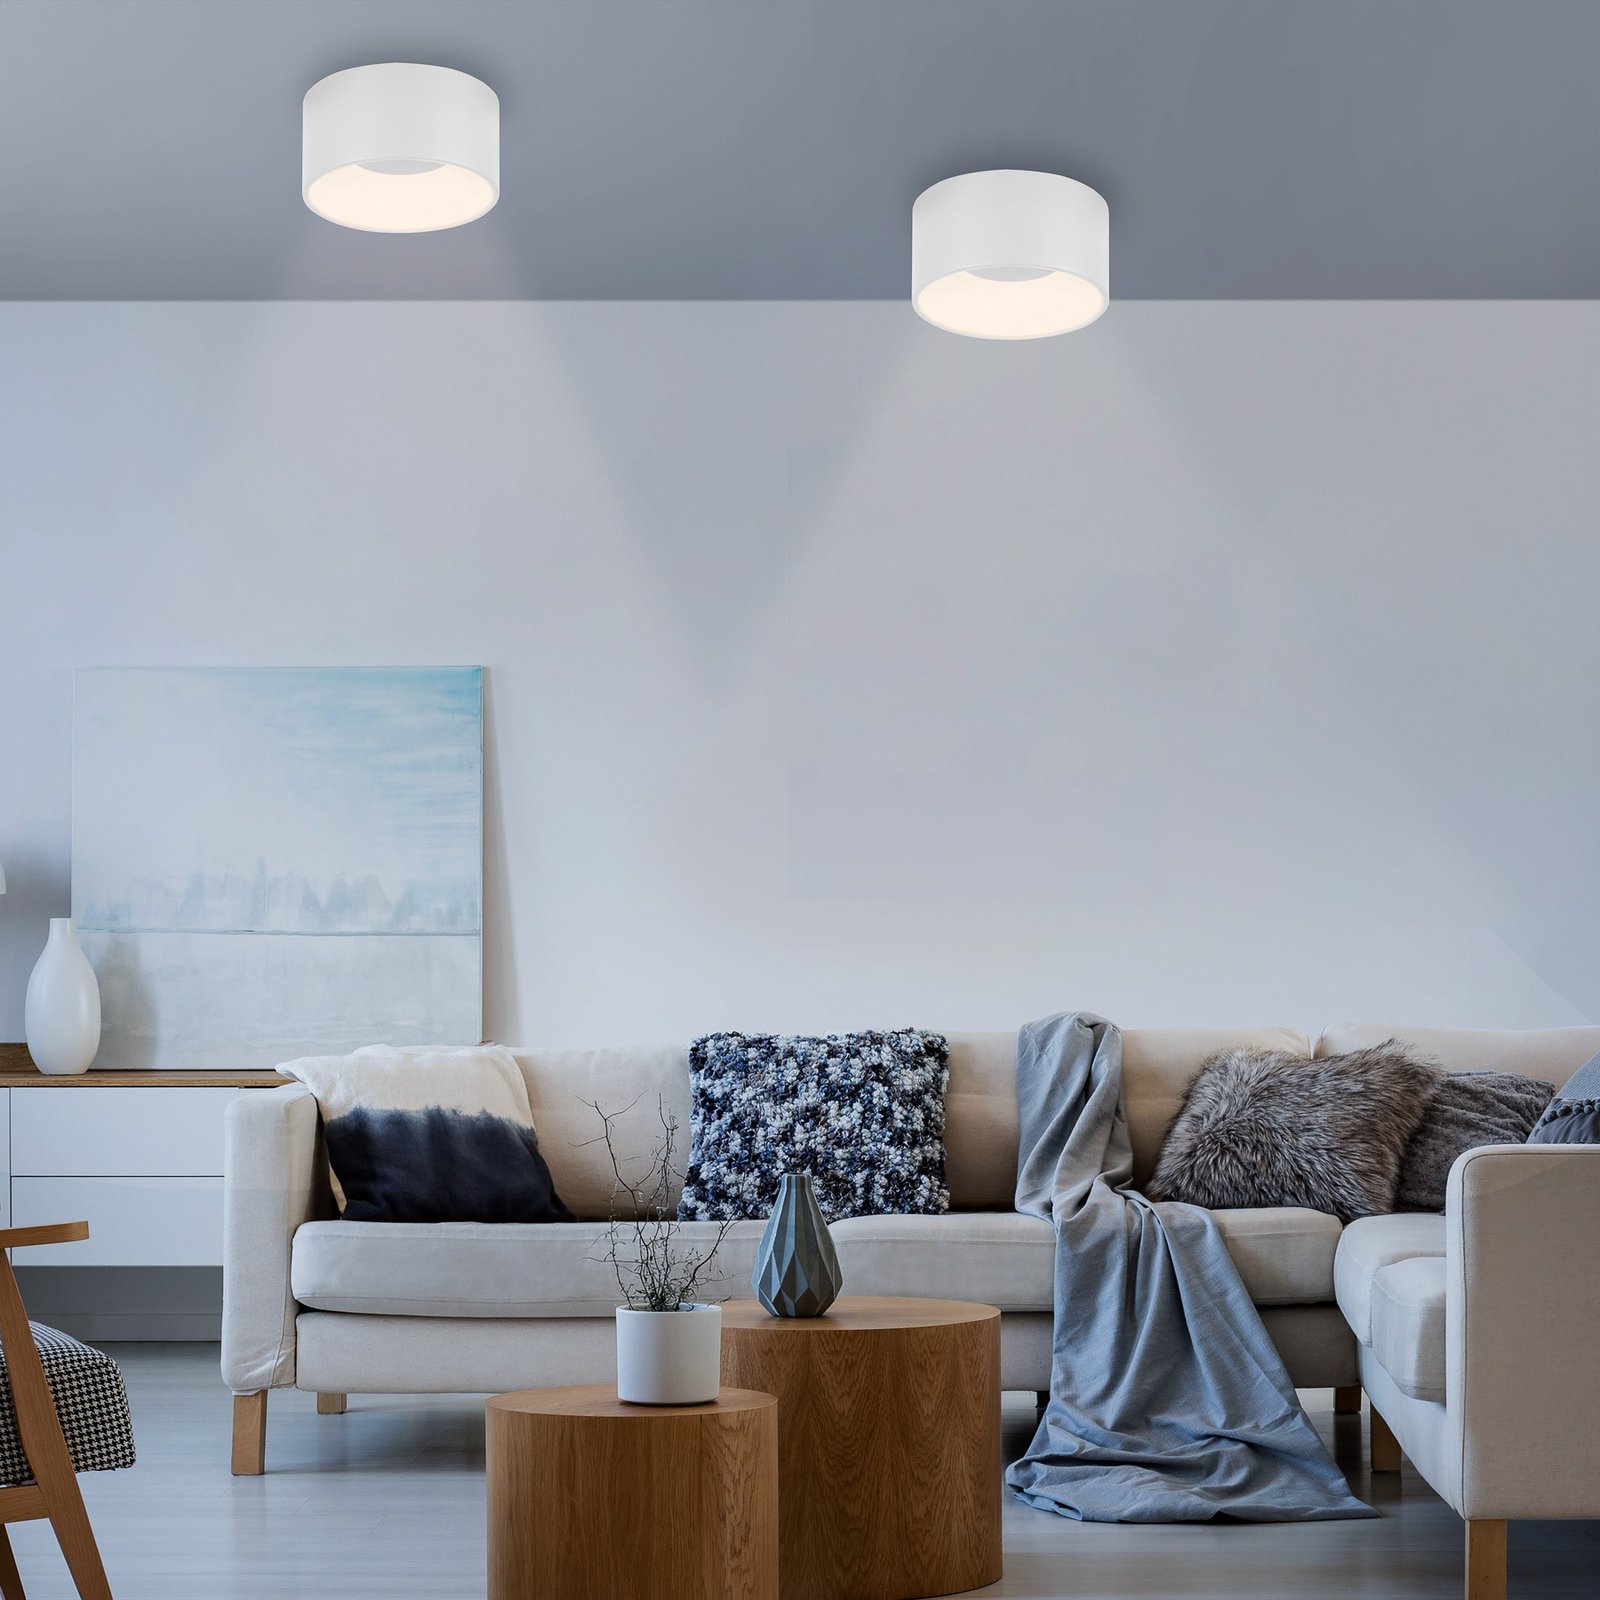 JUST LIGHT. Φωτιστικό οροφής Tanika LED, λευκό, Ø 16 cm, με δυνατότητα